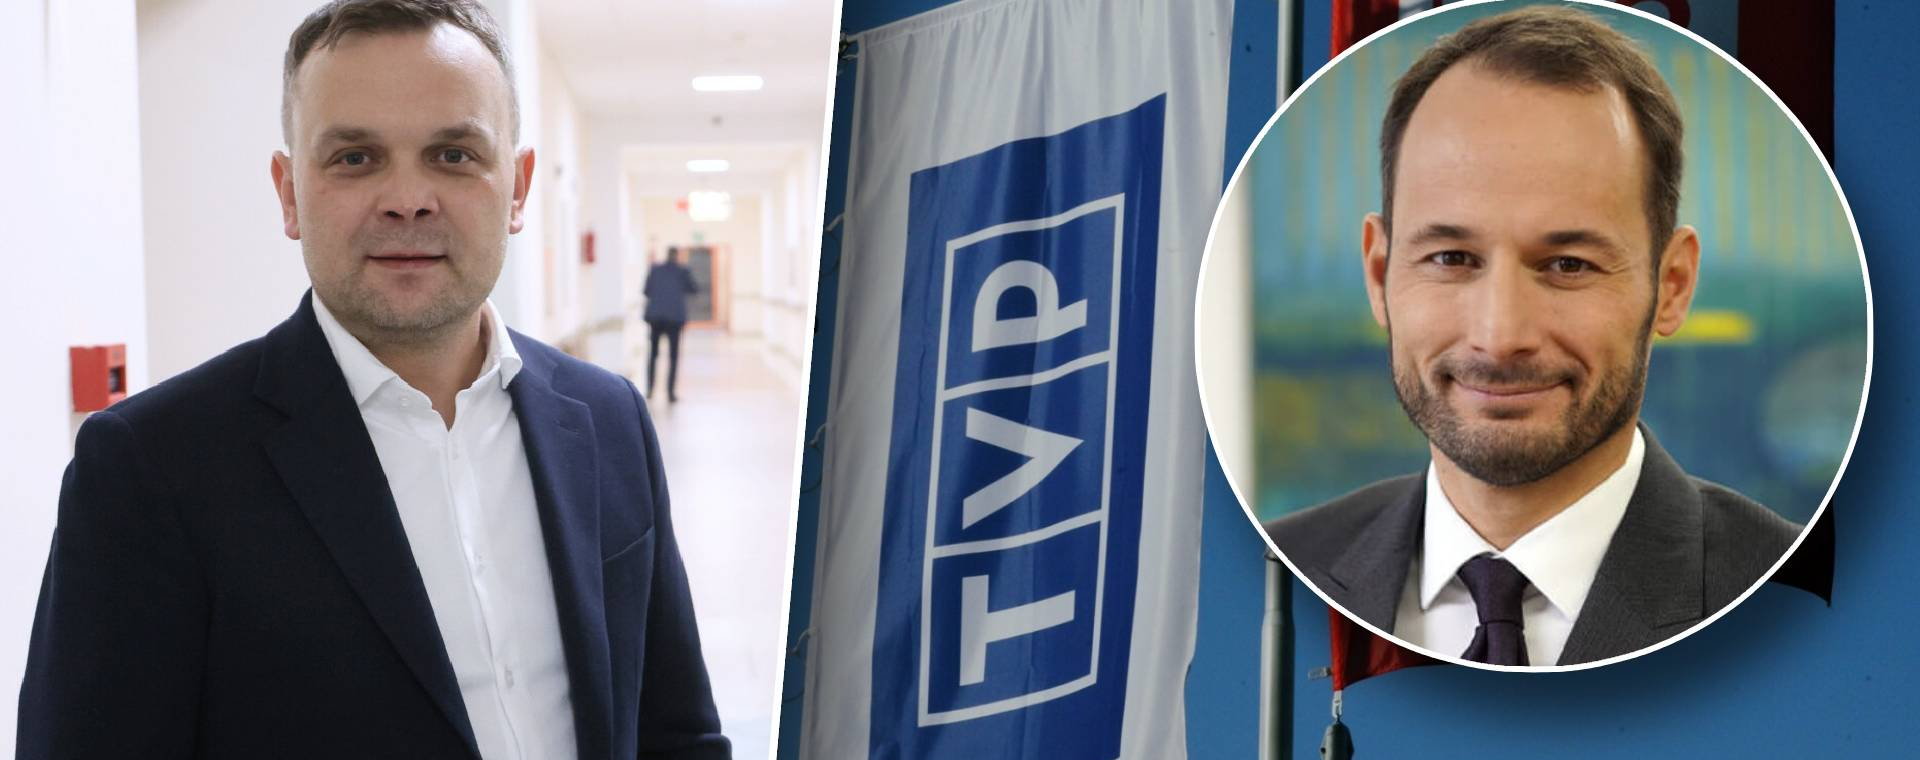 Czy Tomasz Sygut nie był prezesem TVP i co z ważnością jego decyzji? Wyjaśnia radca prawny Krzysztof Łyszyk (w kółku)